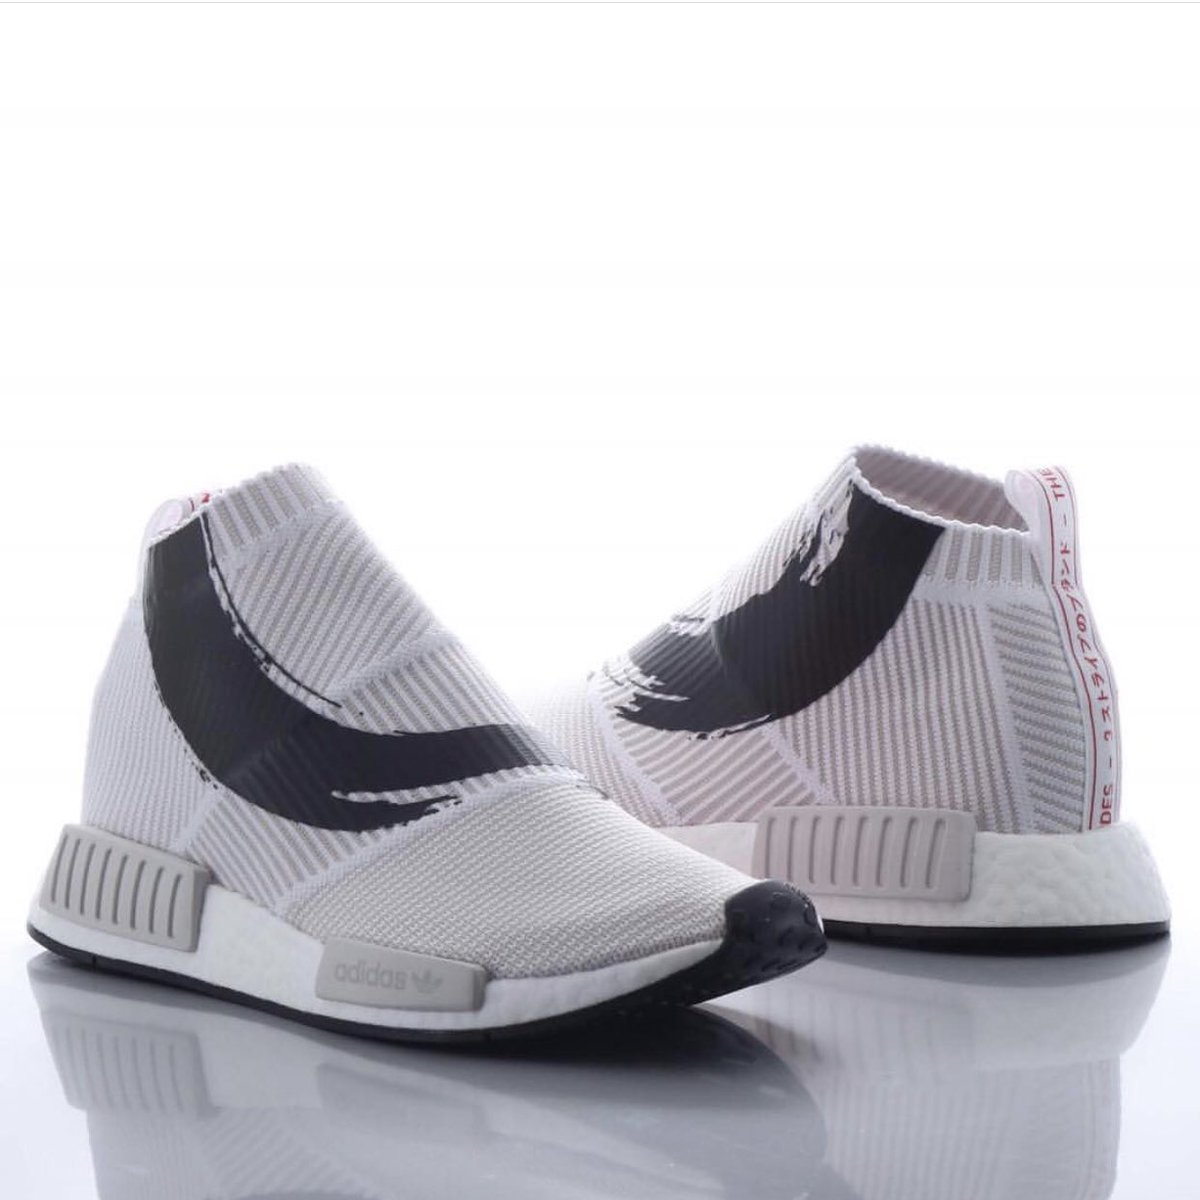 Release DateSneakersnstuff x adidas NMDCity Sock Gor.